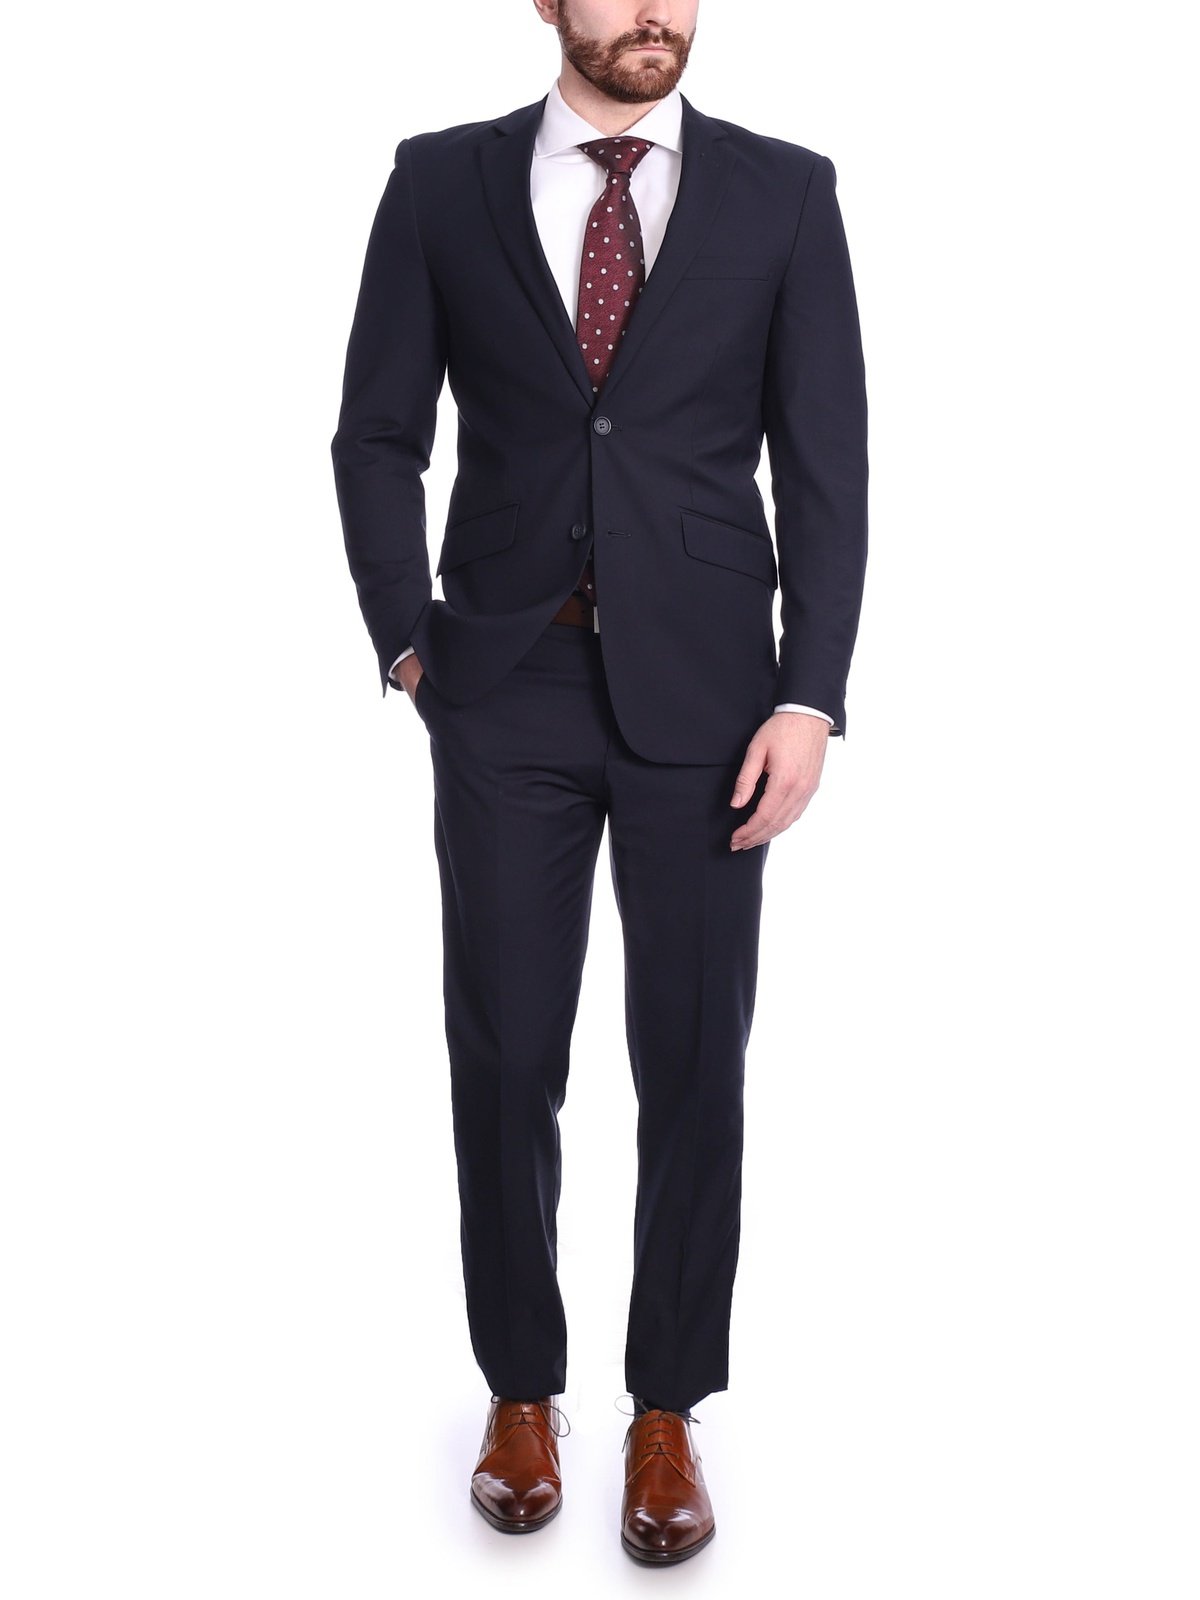 SUITS FOR MEN Men Wedding suits Blue 2 Piece Slim Fit Suits